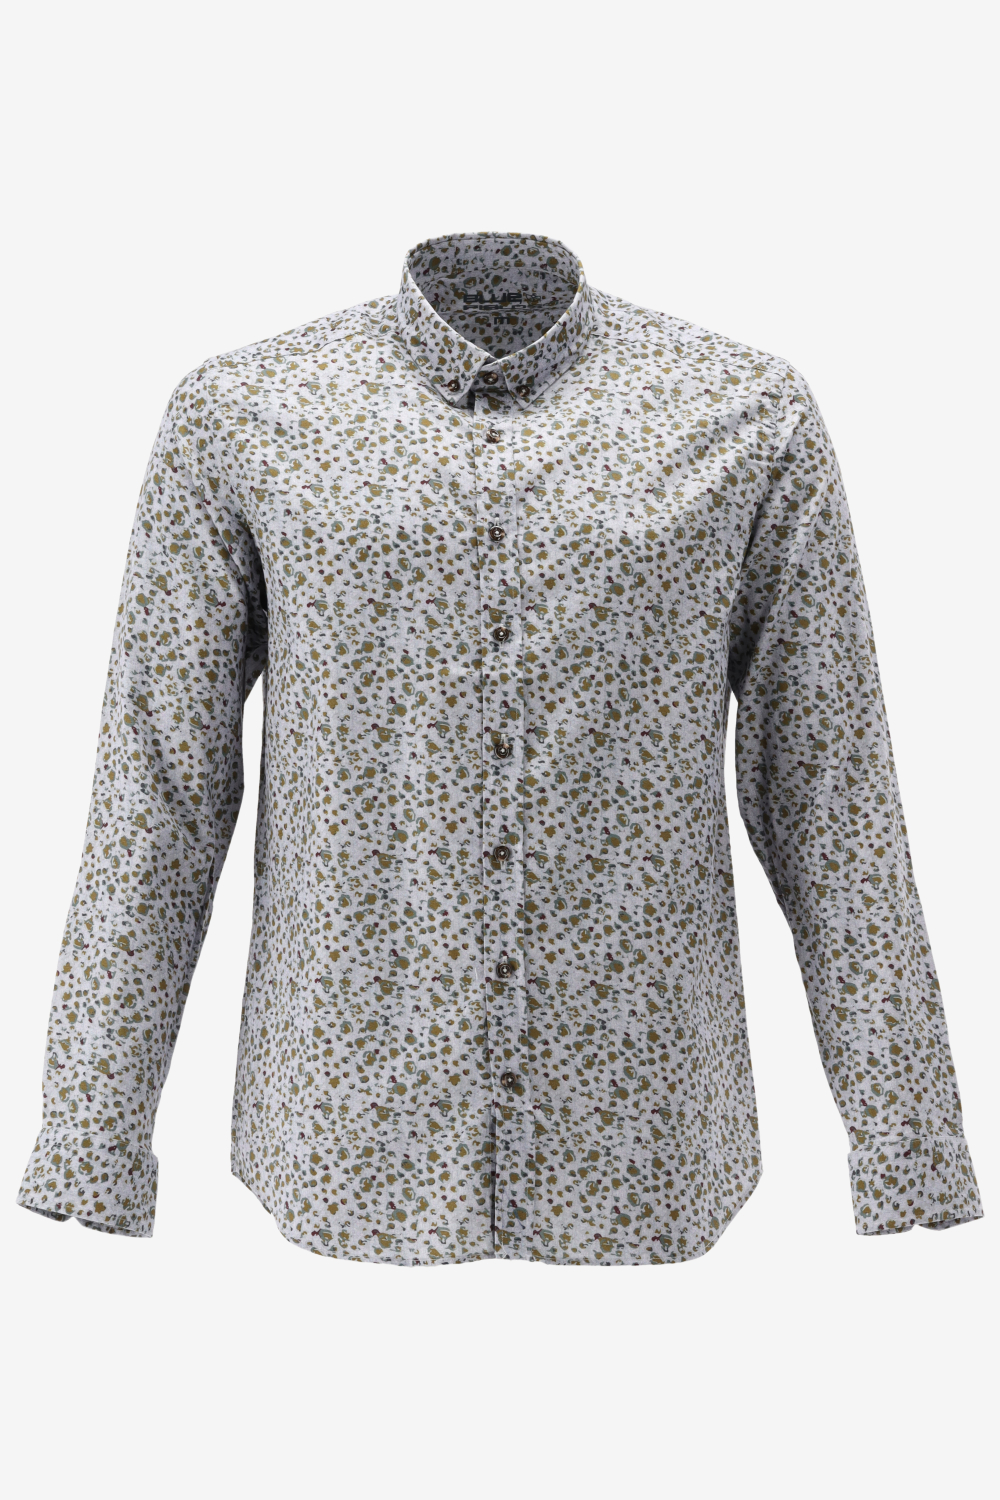 BlueFields Overhemd Overhemd Van Katoen Met Print 21442008 1883 Mannen Maat - XL